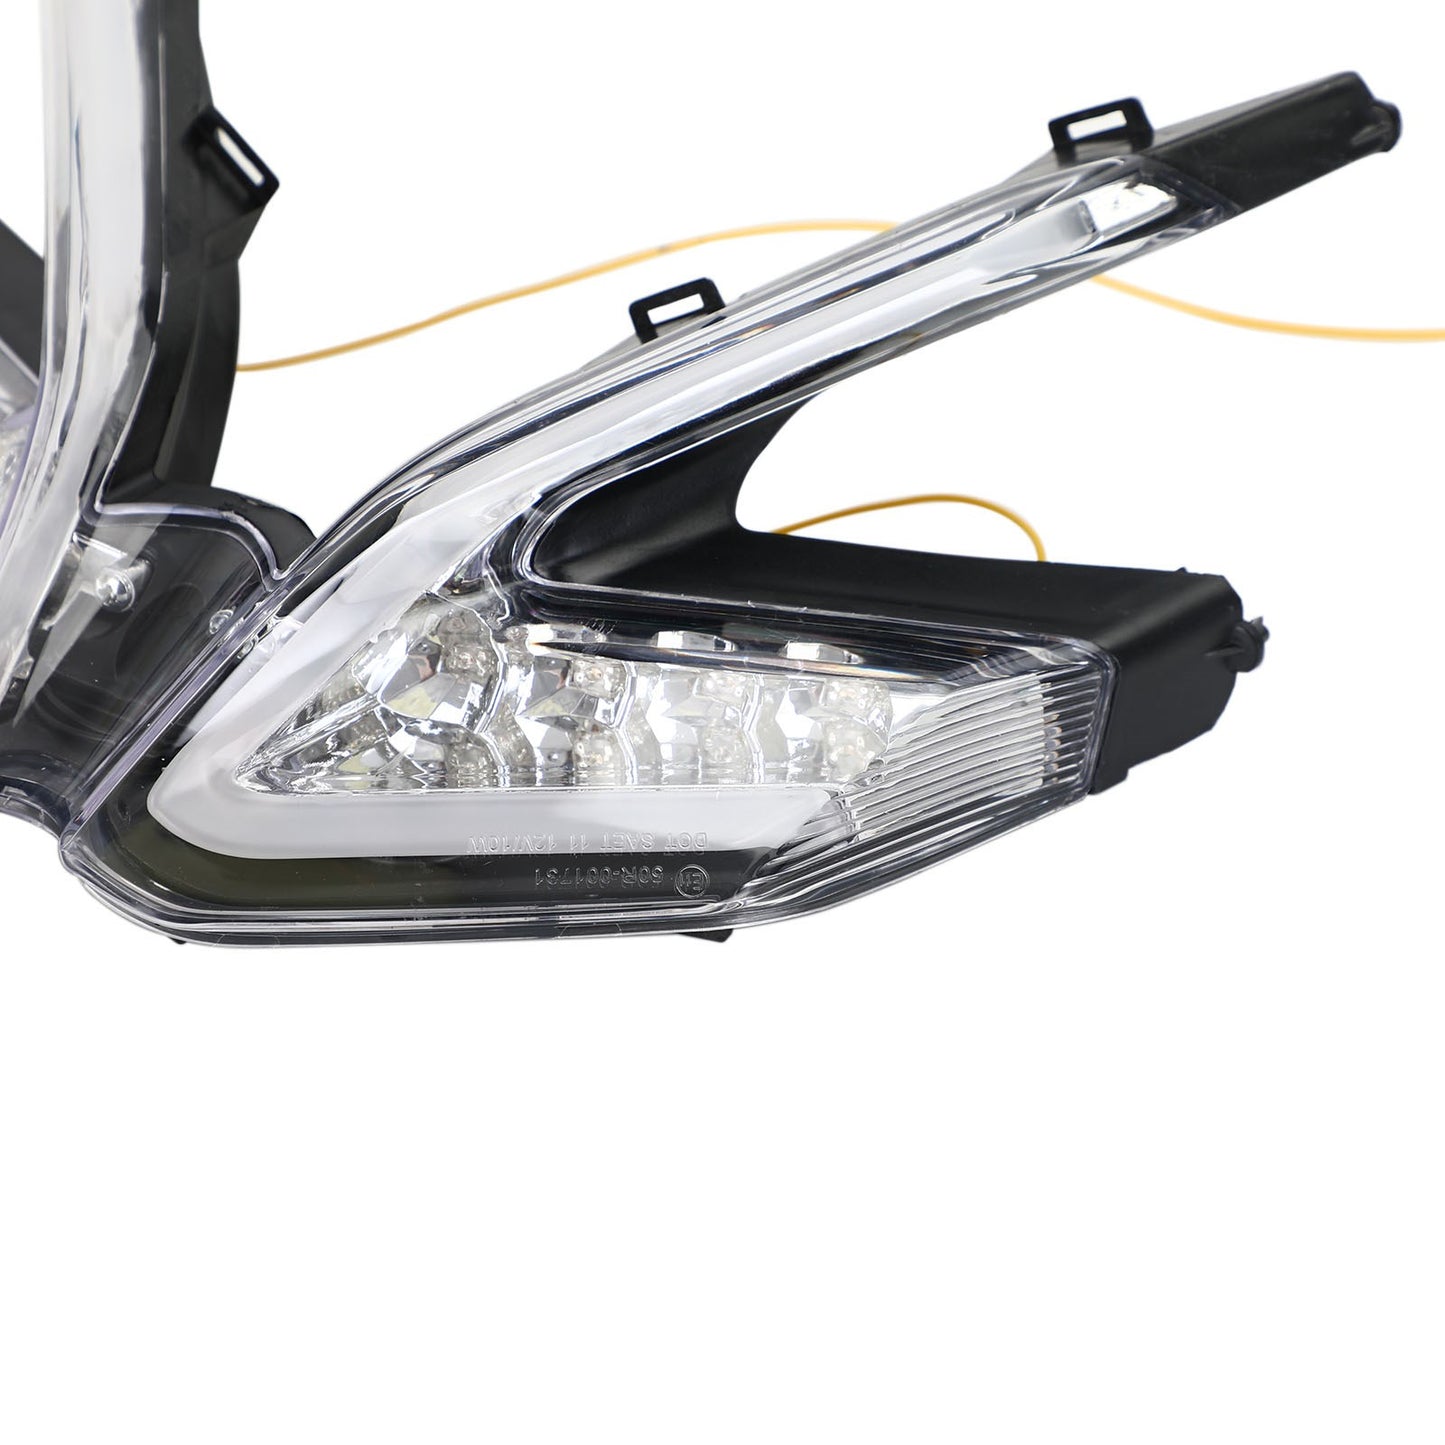 Ducati 959 899 1299 1199 Panigale LED Clignotants intégrés pour feux arrière